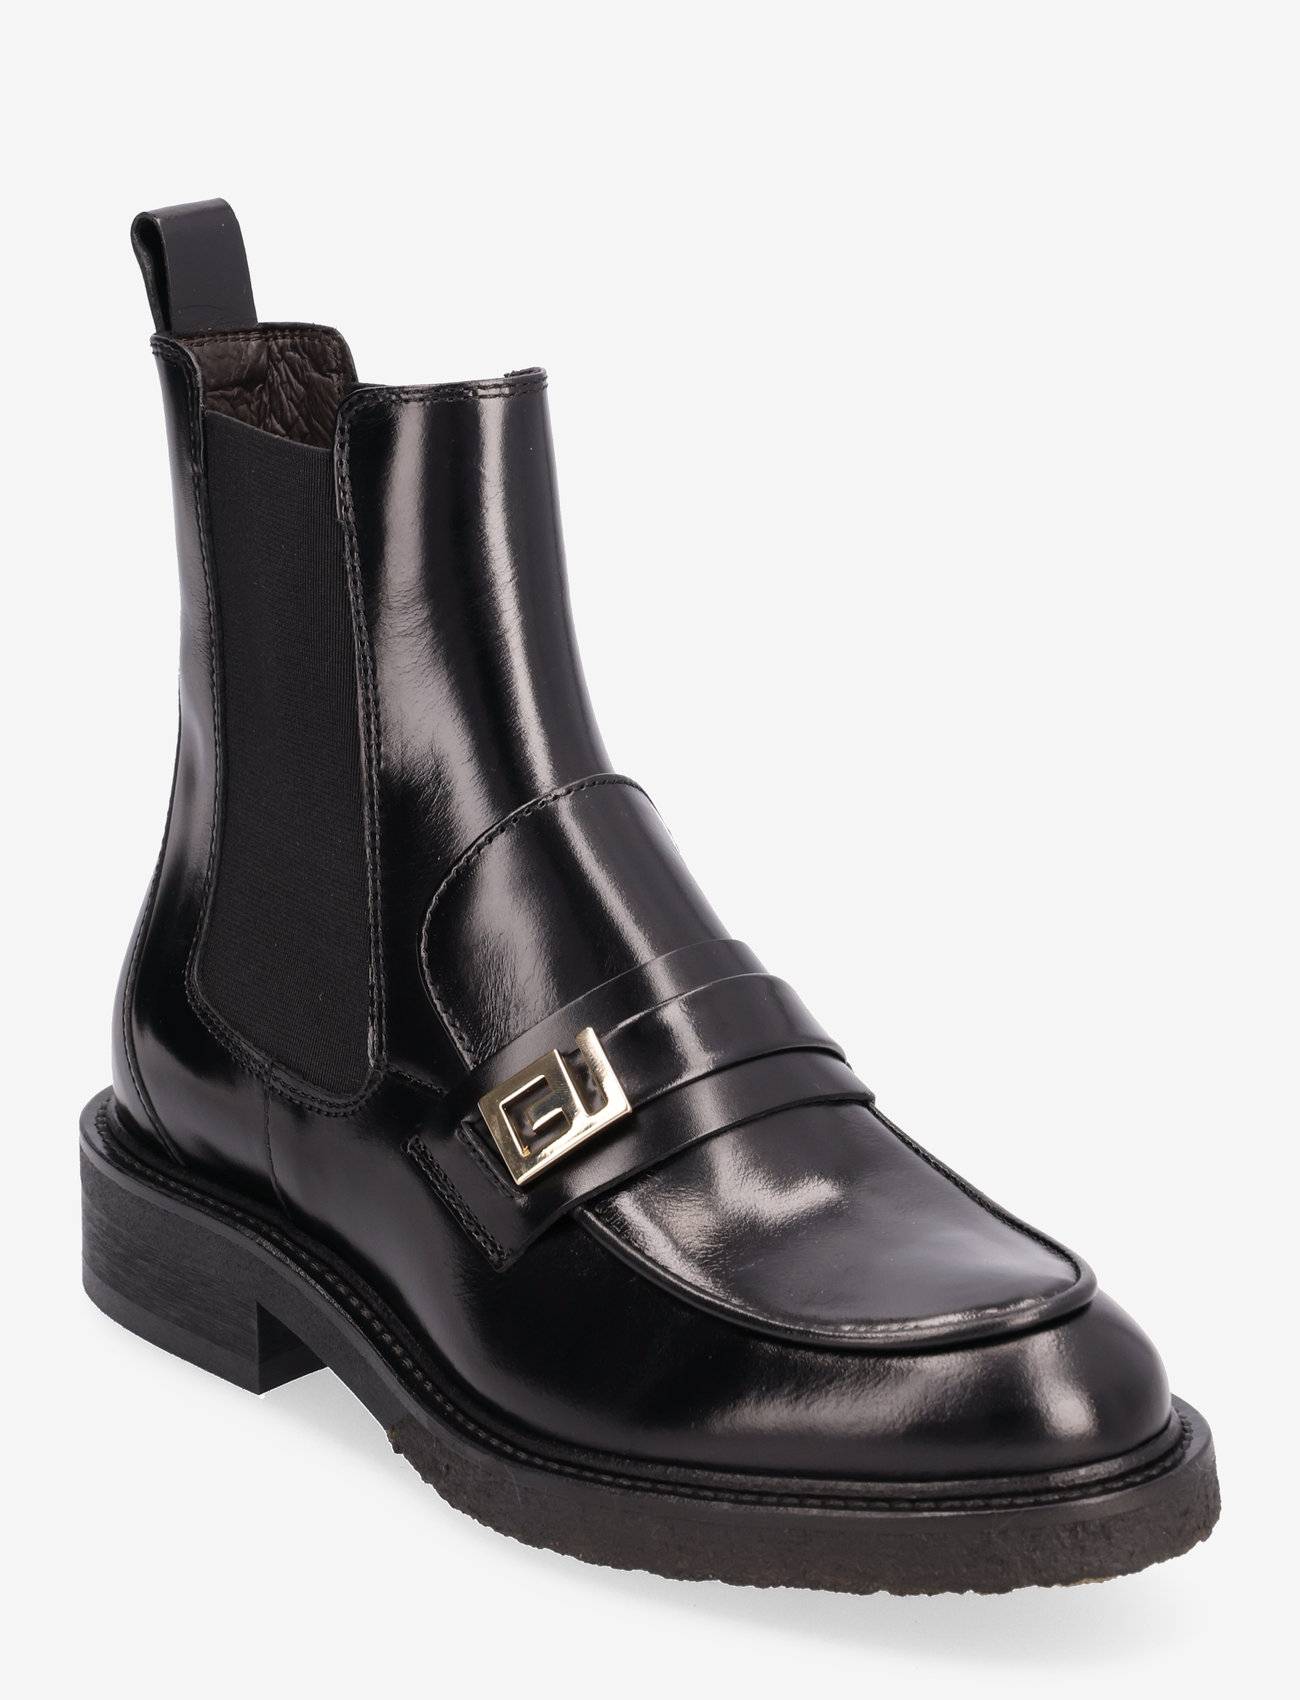 Billi Bi - Boots - chelsea boots - black calf - 0